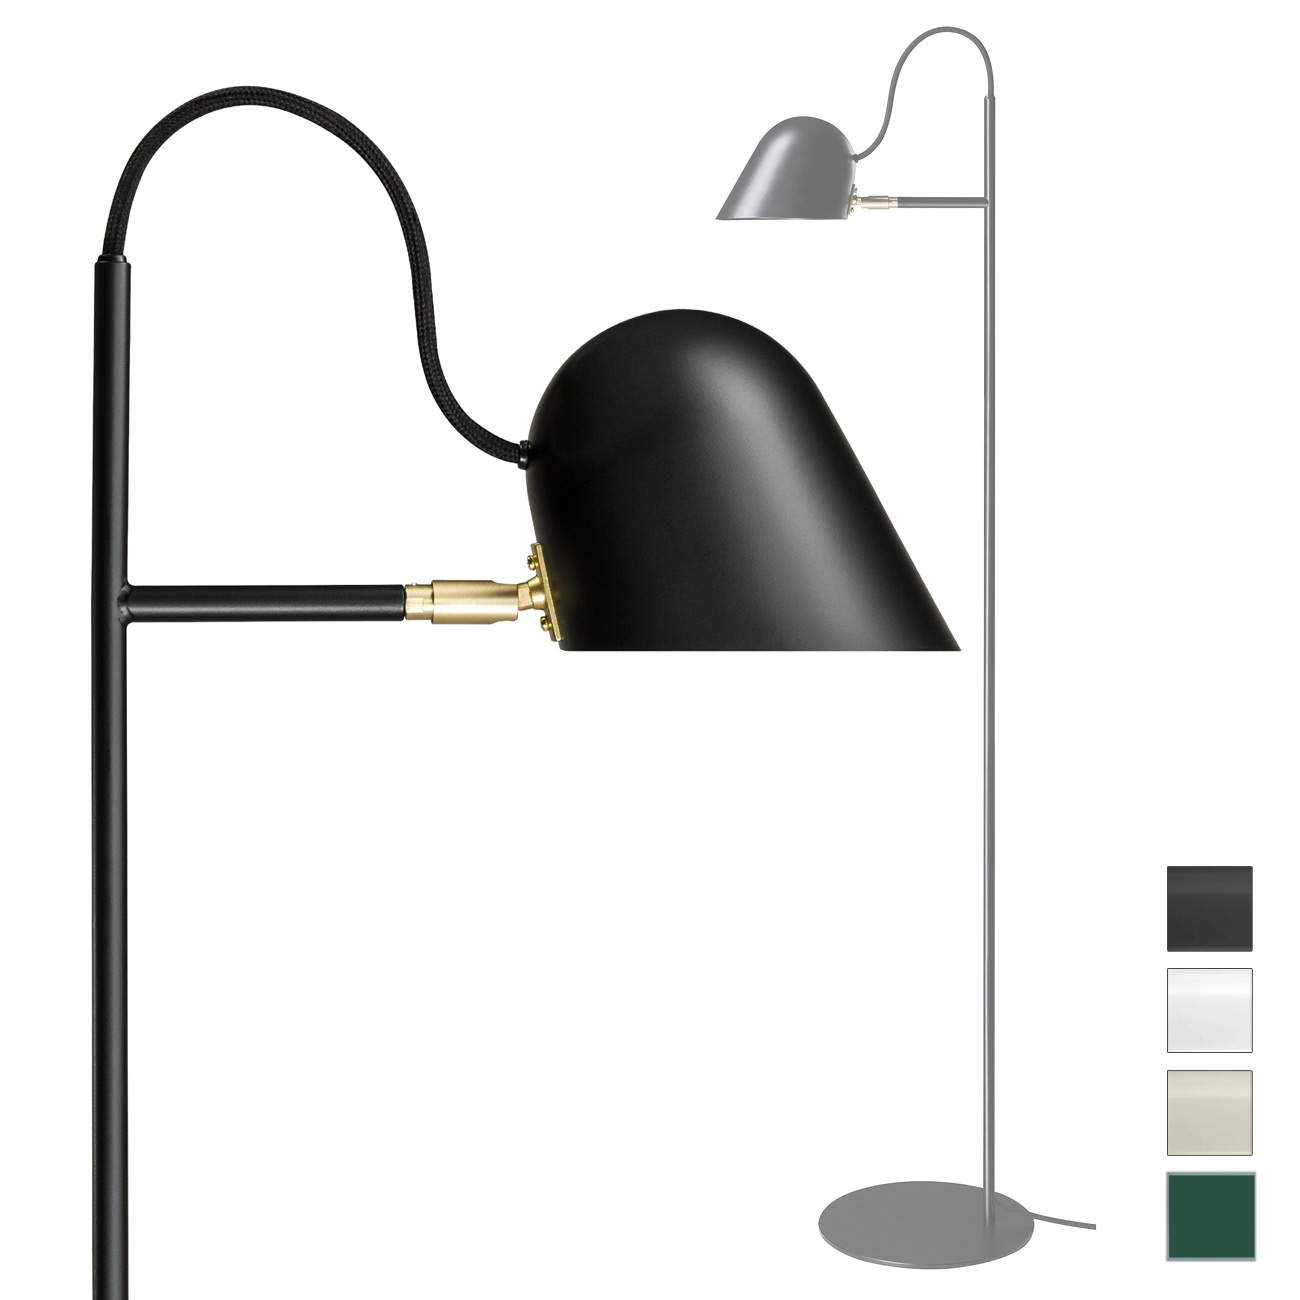 Moderne schwedische Design-Stehleuchte STRECK mit LED: Klares Design: schwedische Stehleuchte STRECK mit LED und Schalter im Schirm